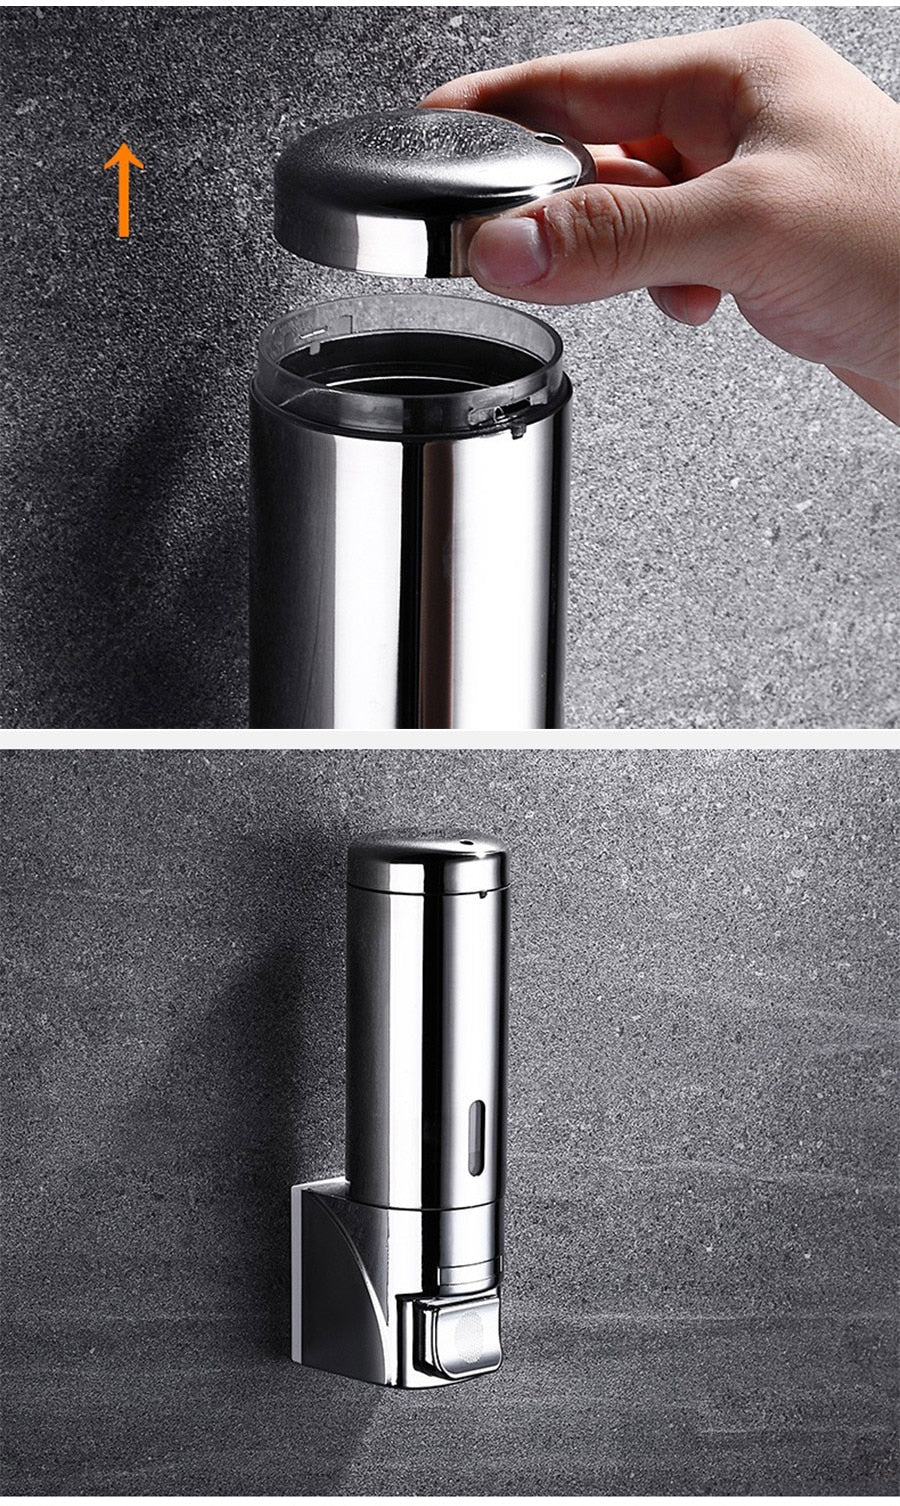 Stainless Steel 3-in-1 Dispenser